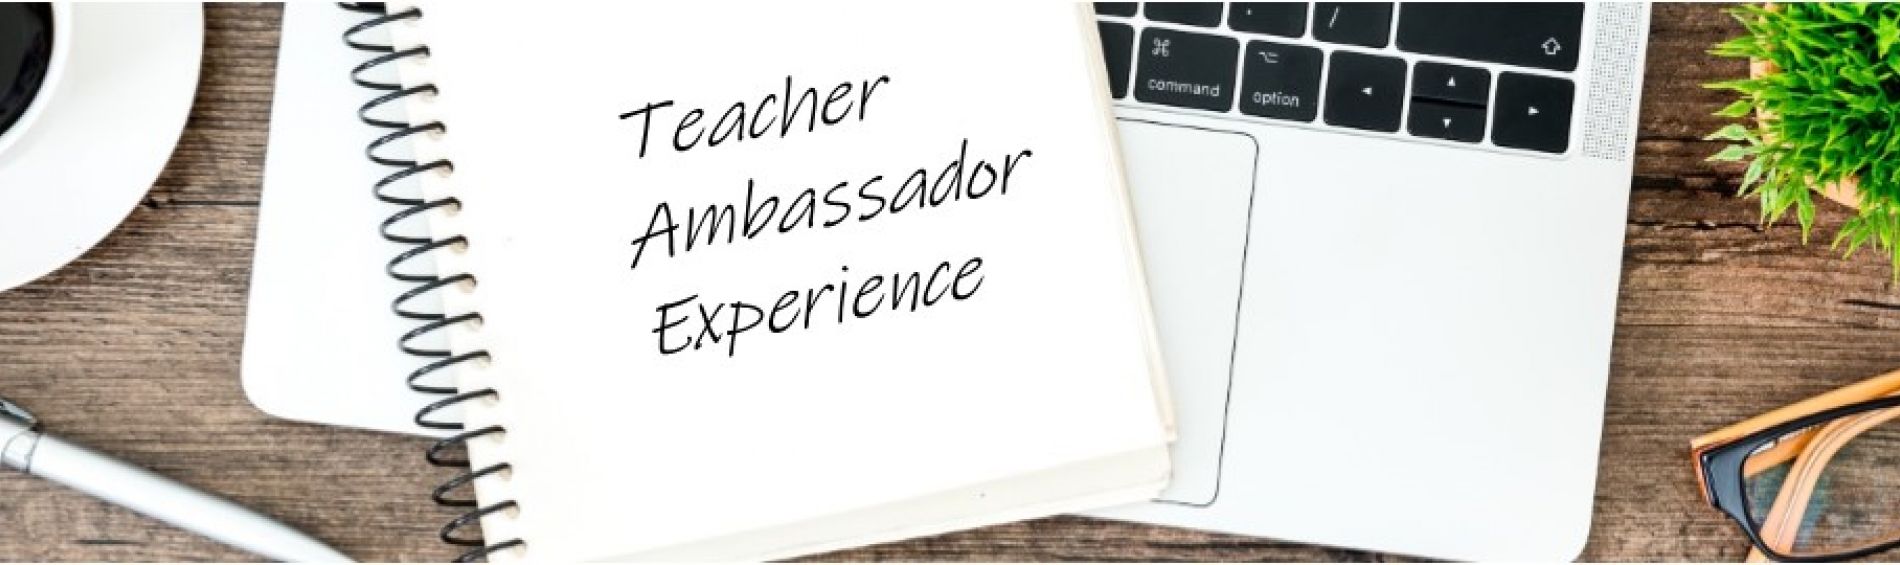 Teacher Ambassador Experience - Cindy Sherstan